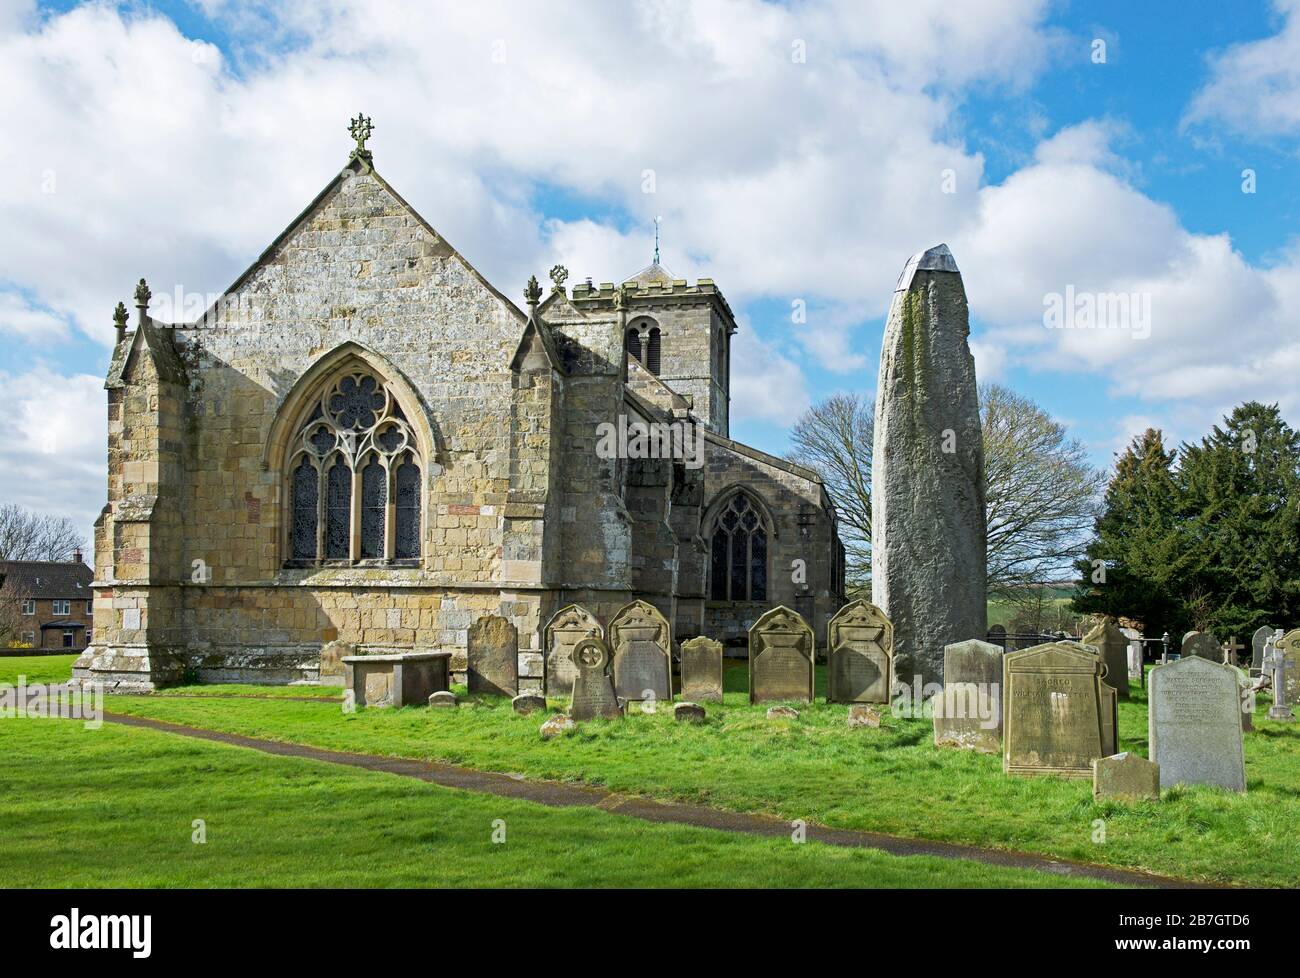 Le monolithe Rudston, la pierre la plus haute d'Angleterre, à côté de l'église des Saints, dans le village de Rudston, dans le Yorkshire de l'est, Angleterre Royaume-Uni Banque D'Images